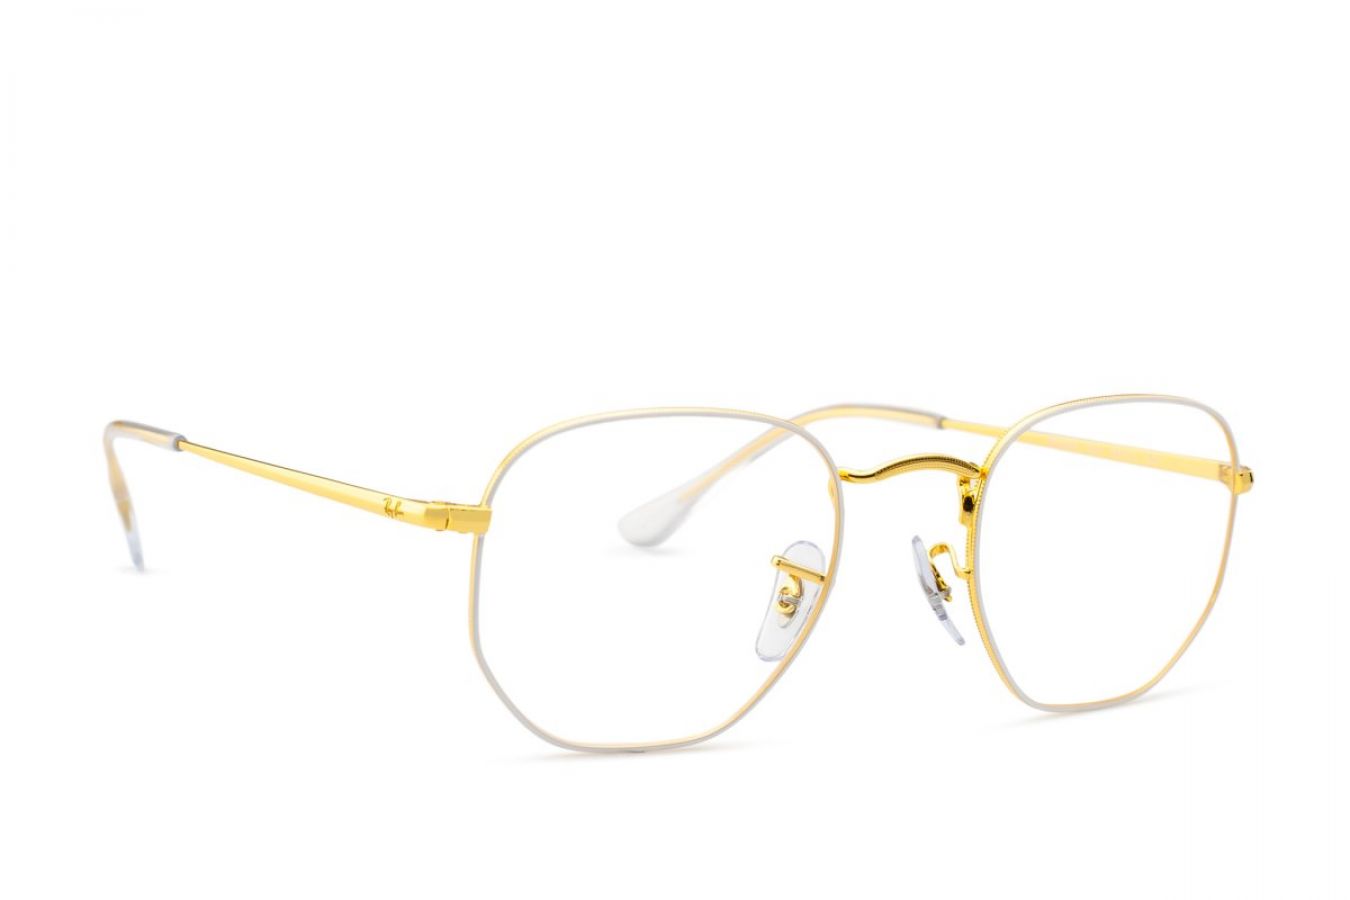 Abyste byli trendy, musí mít vaše brýle zlaté spojovací prvky